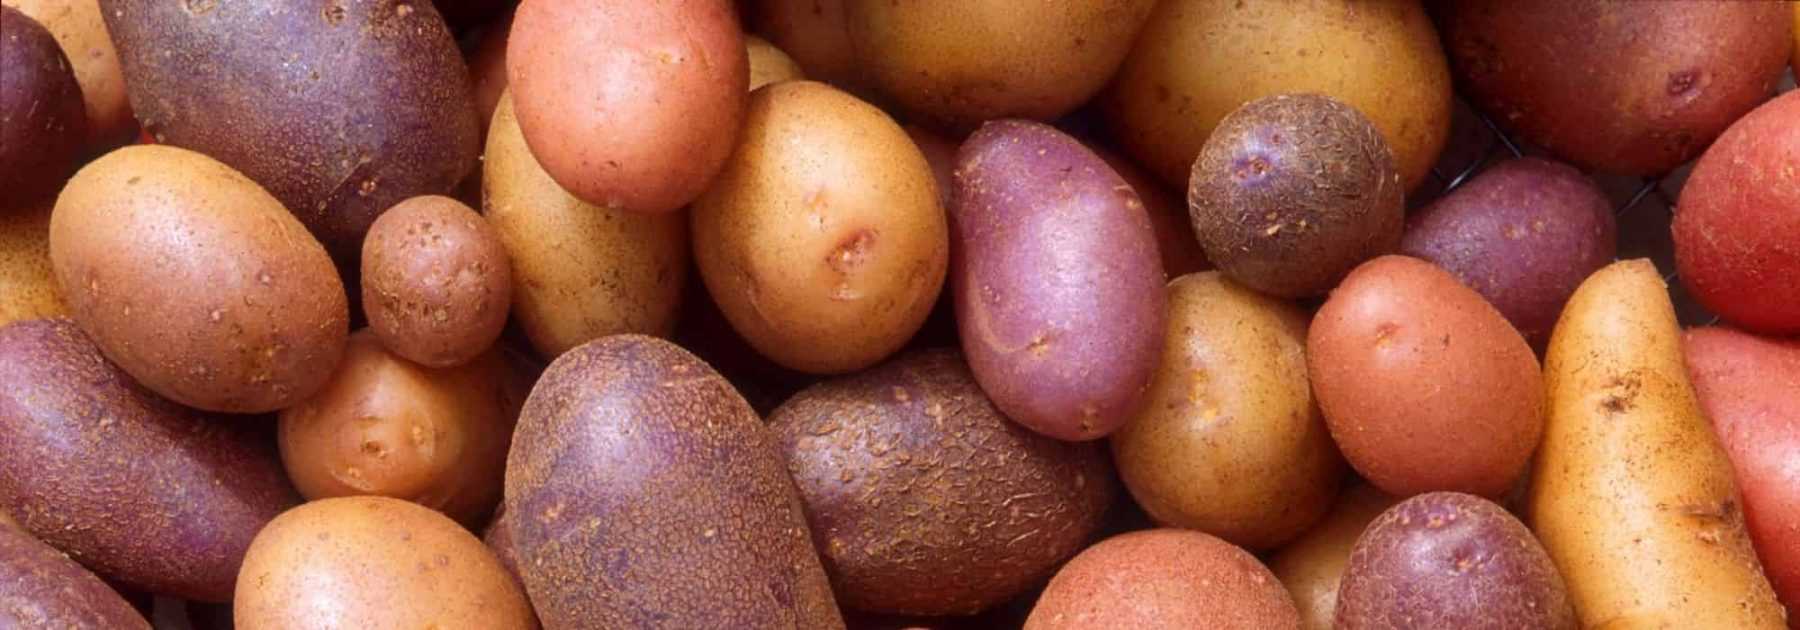 Cultiver des pommes de terre nouvelles